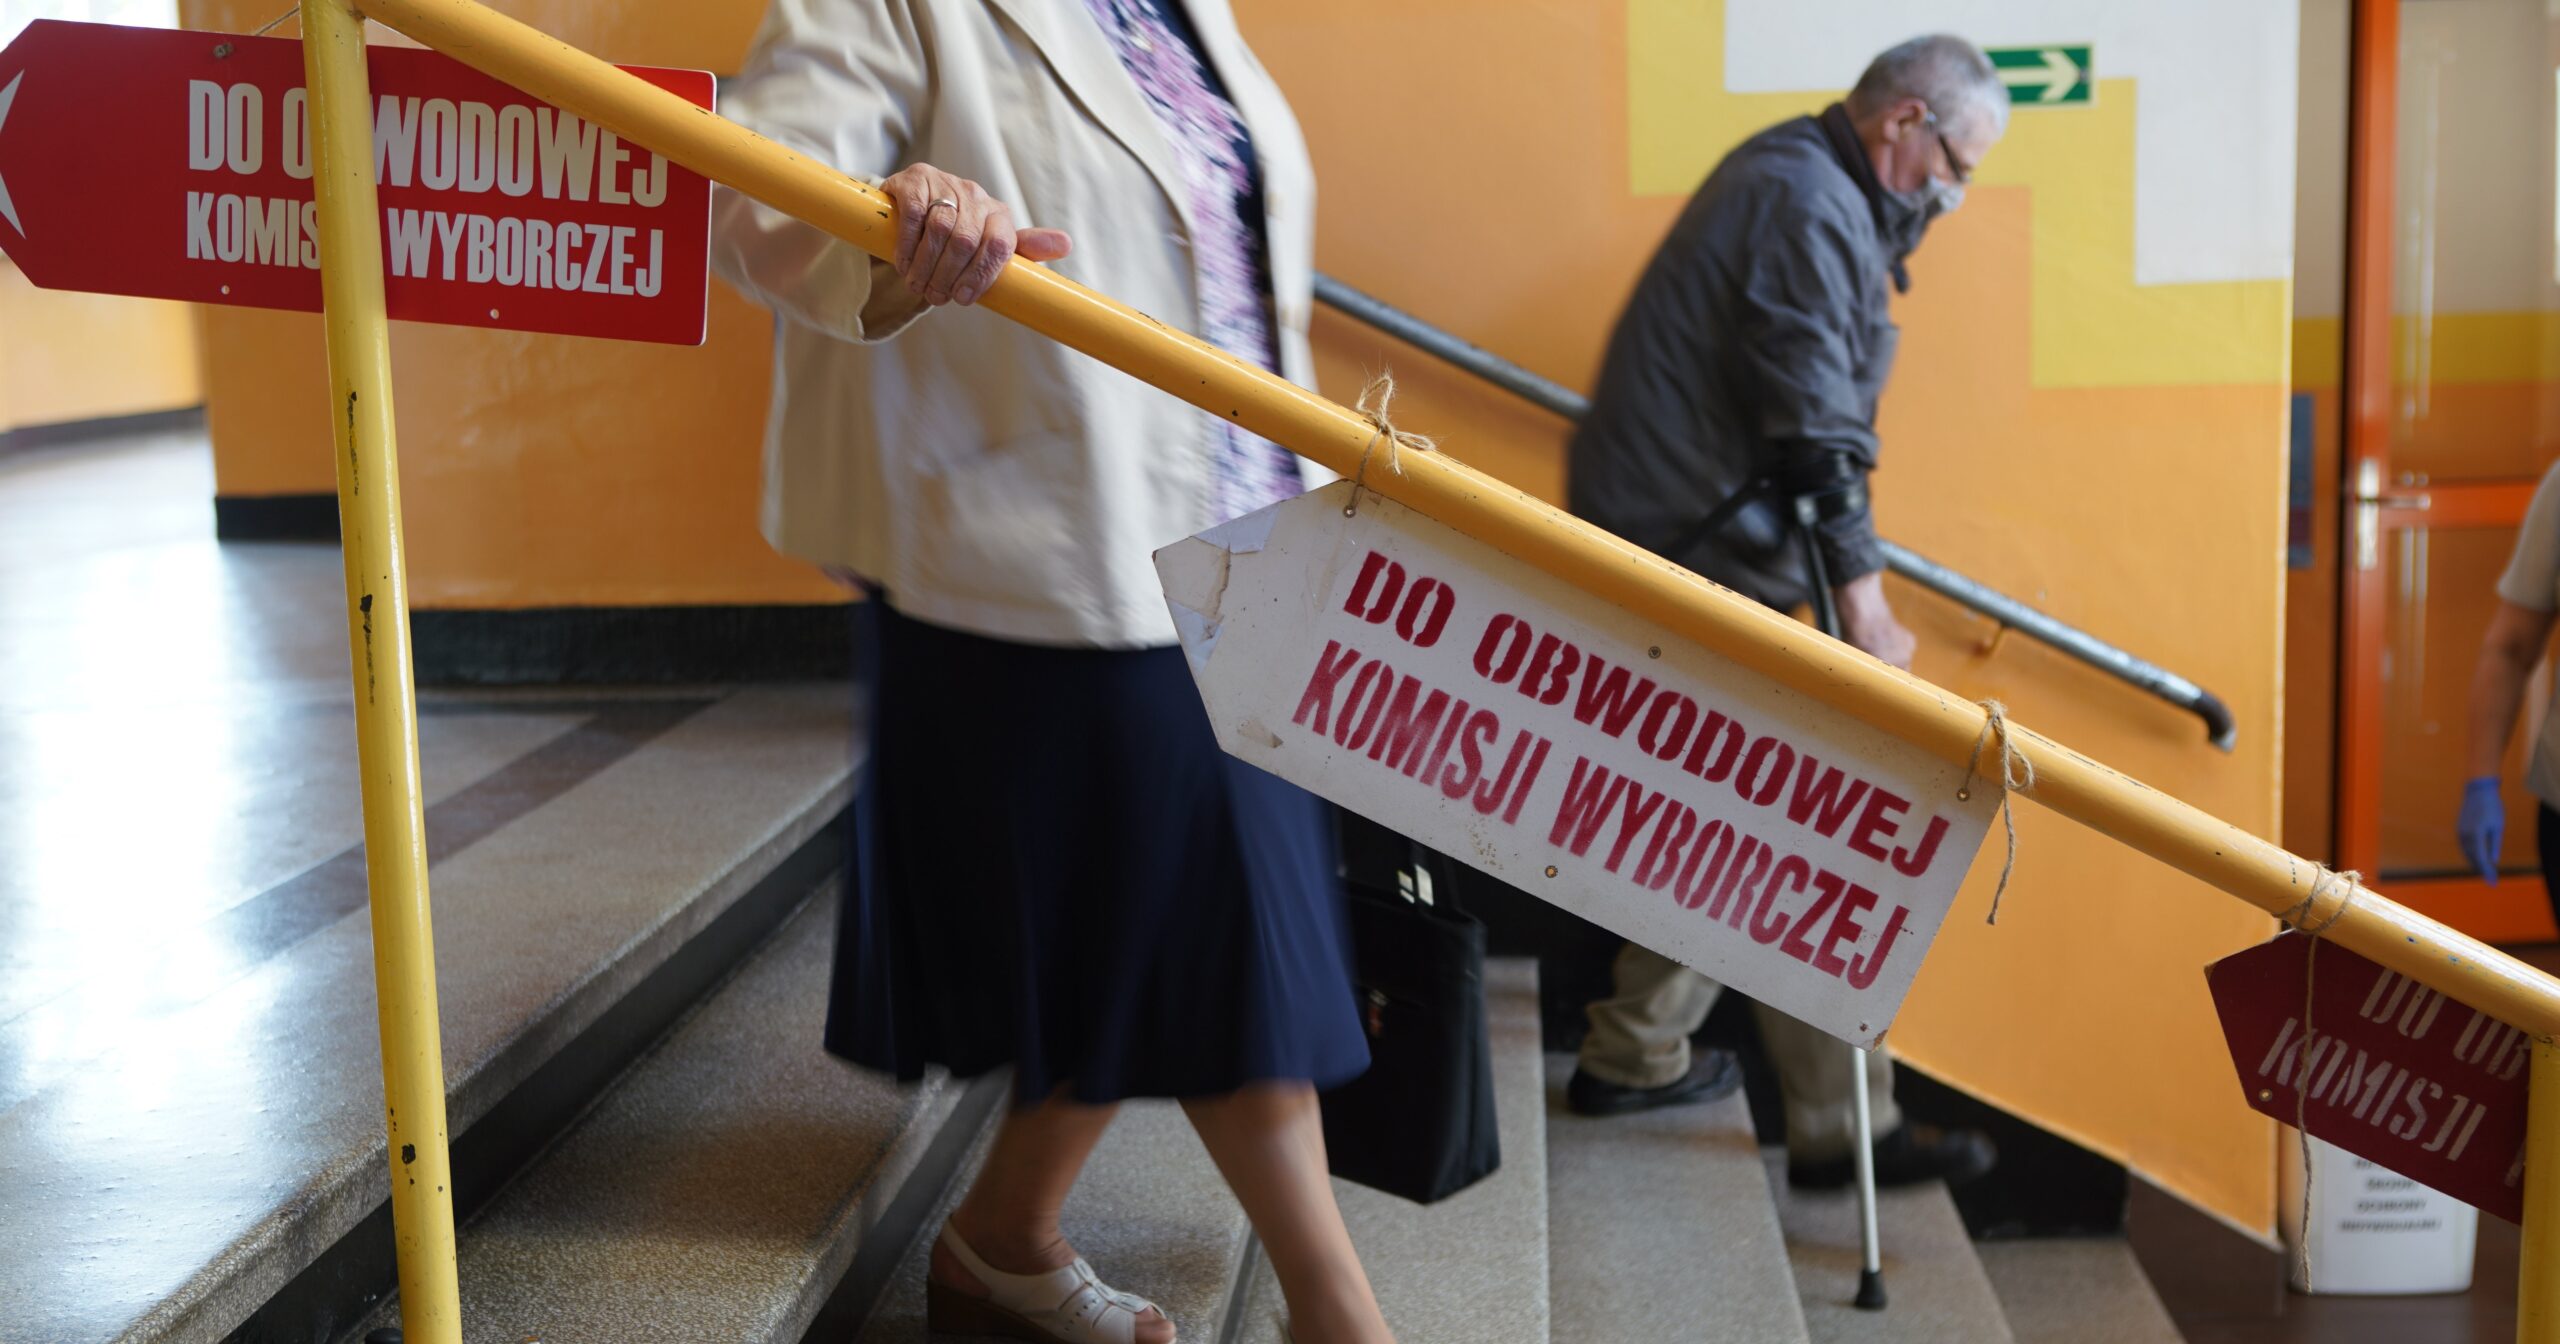 Ponad 1,1 mln Polaków zarejestrowało się do głosowania poza miejscem zamieszkania jako „turyści wyborczy”, co do których istnieje podejrzenie, że mają majstrować przed wyborami